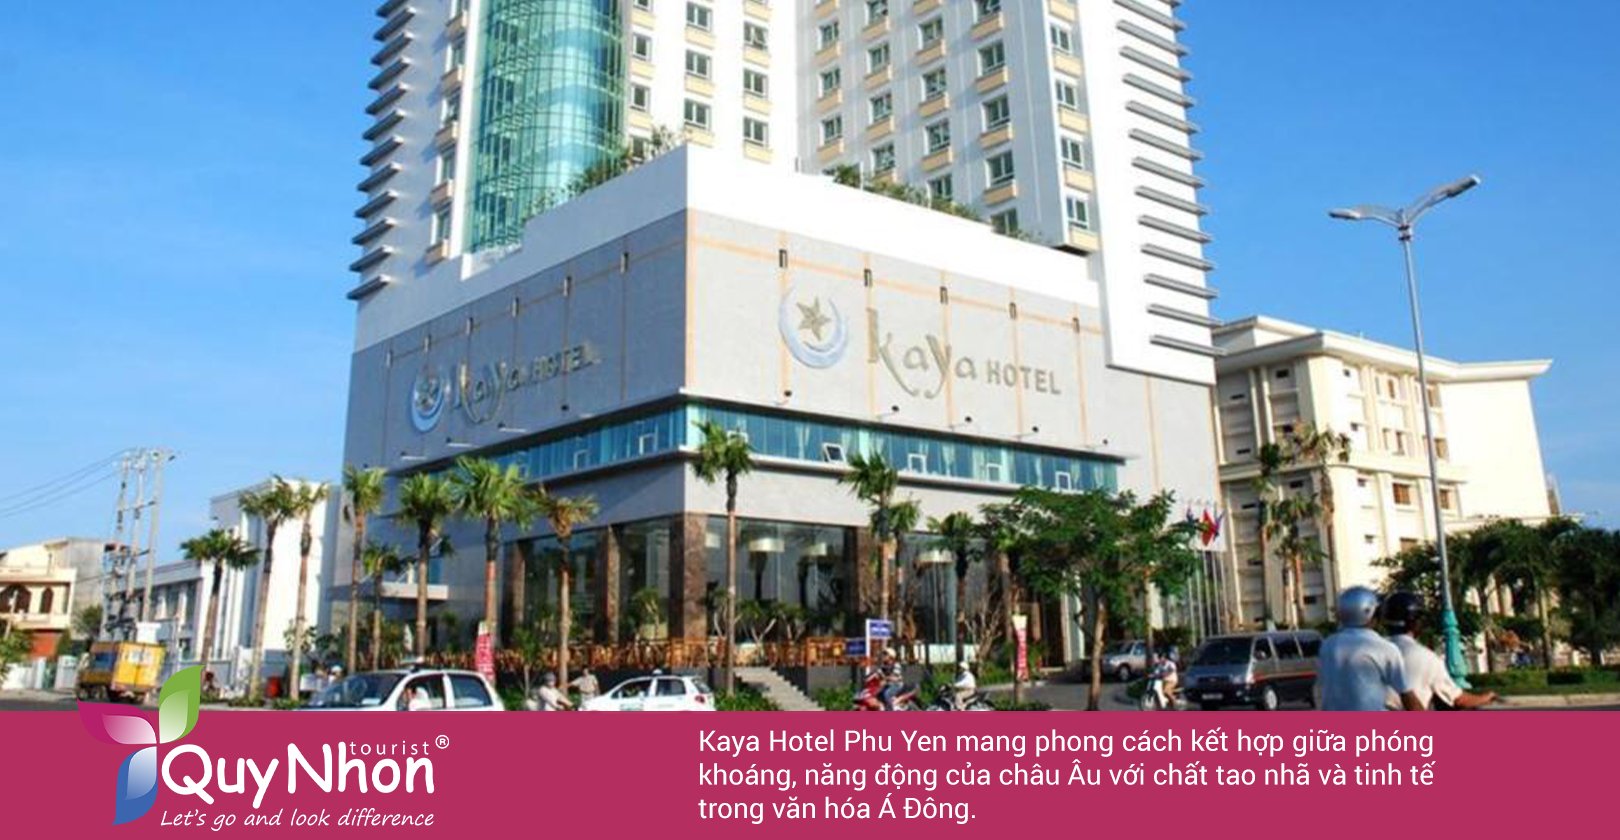 Kaya Hotel Phú Yên: Nổi bật, sang trọng và tinh tế